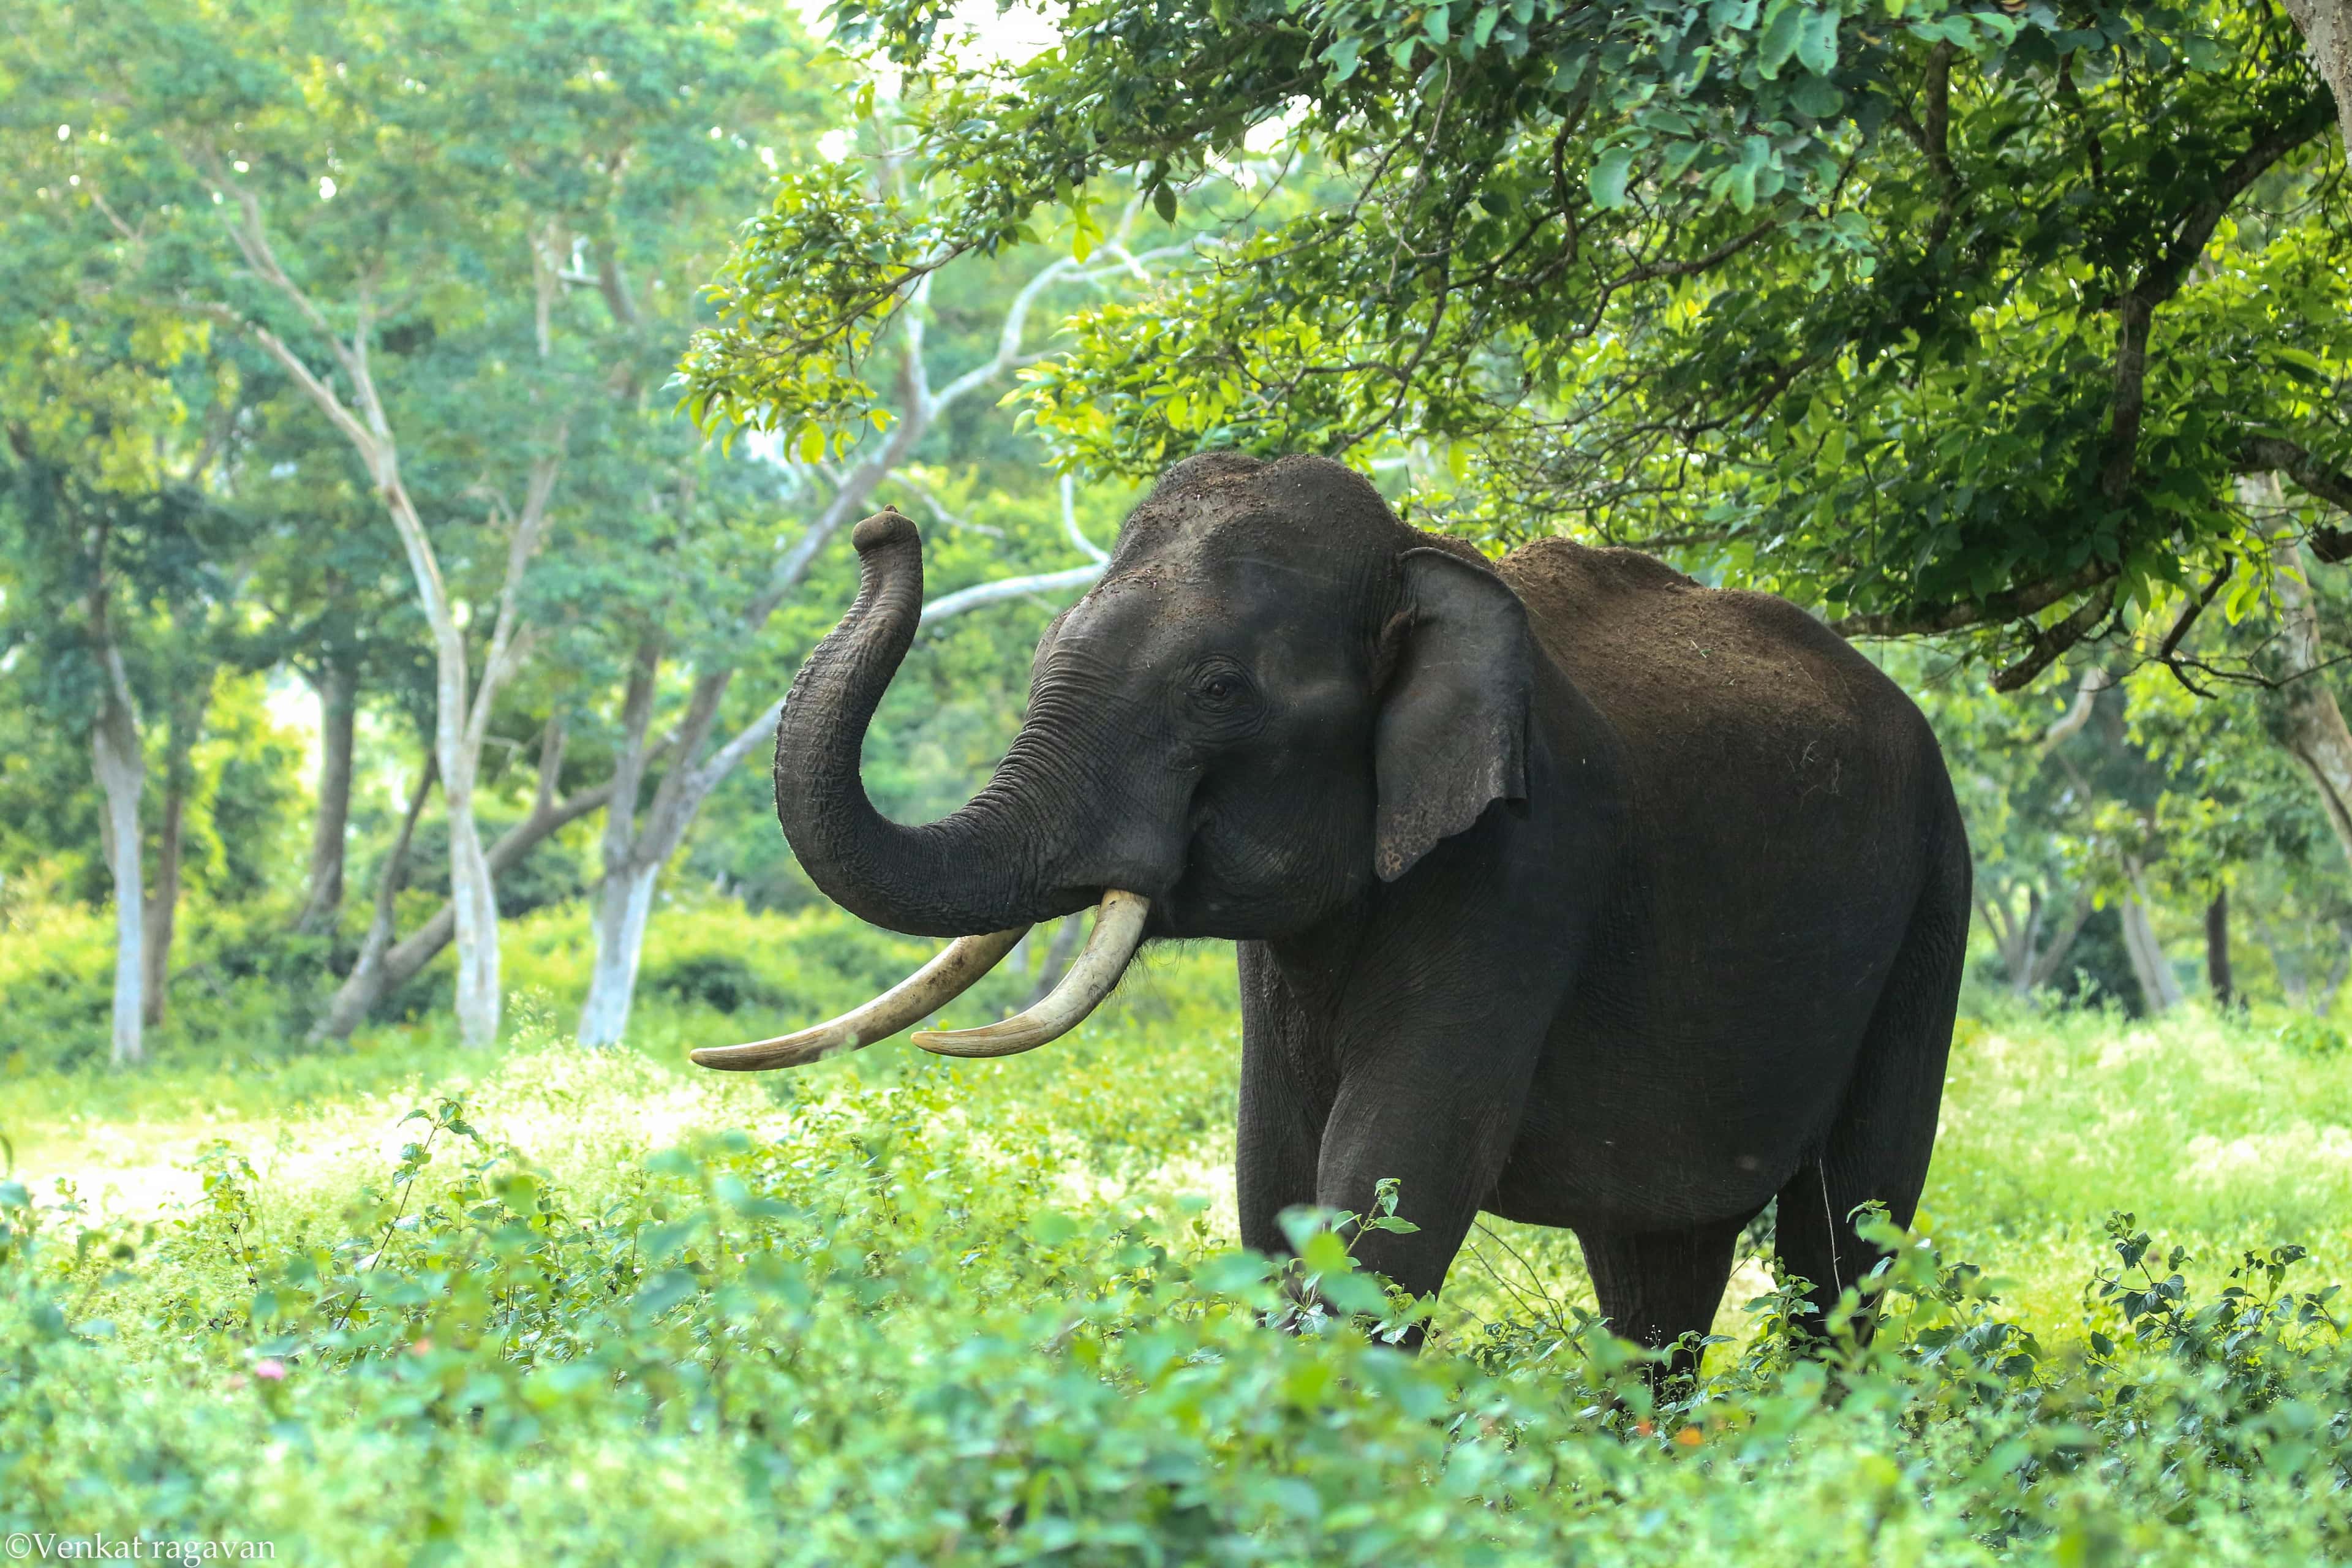 Ein Elefant steht in einem grünen Wald, sein Rüssel ist erhoben und die Stoßzähne sind sichtbar.